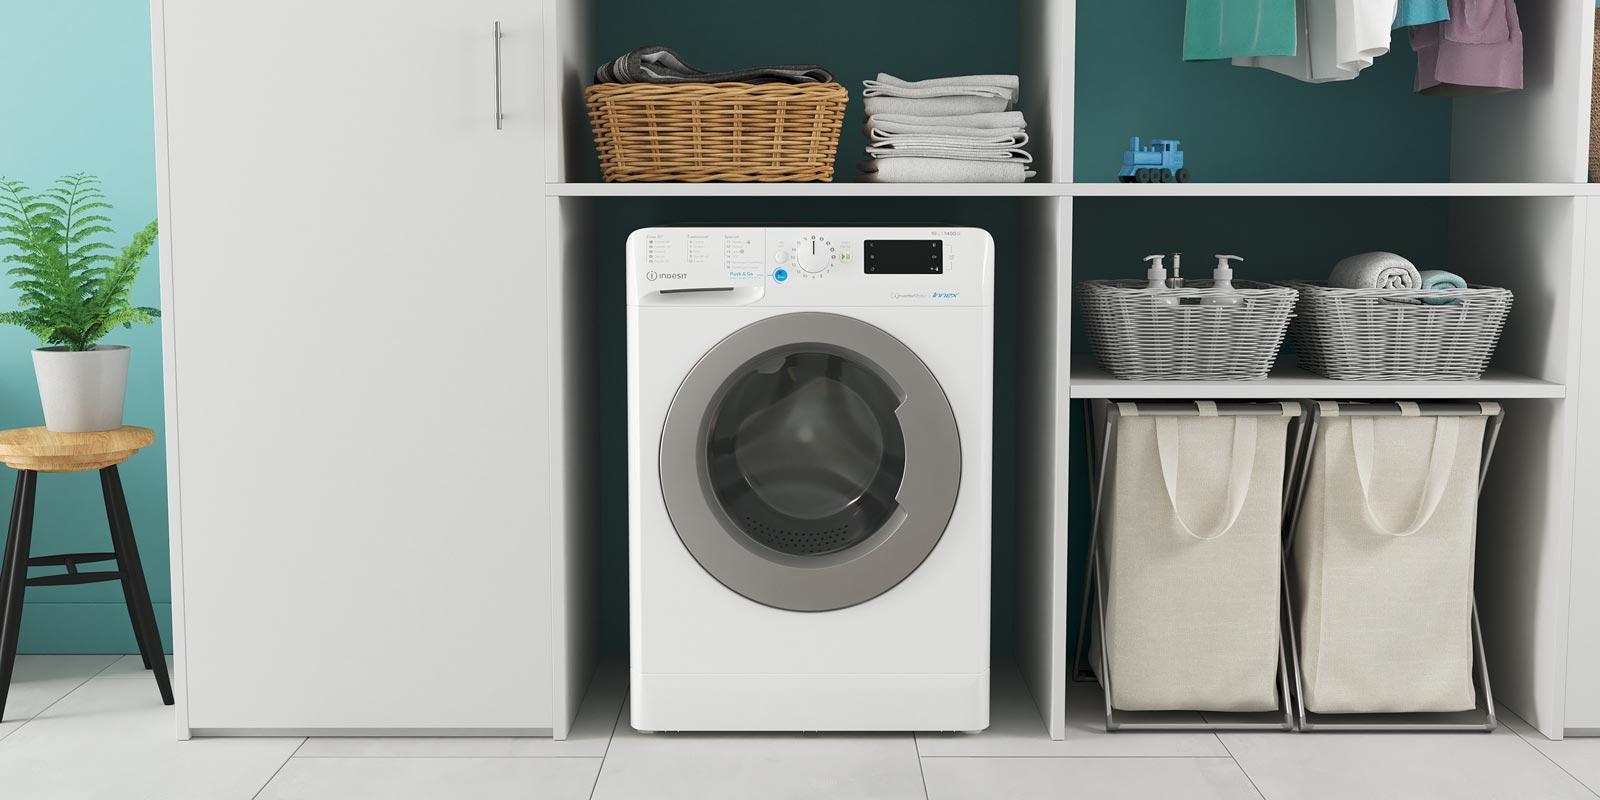 Miglior mobile per lavatrice in offerta oggi 